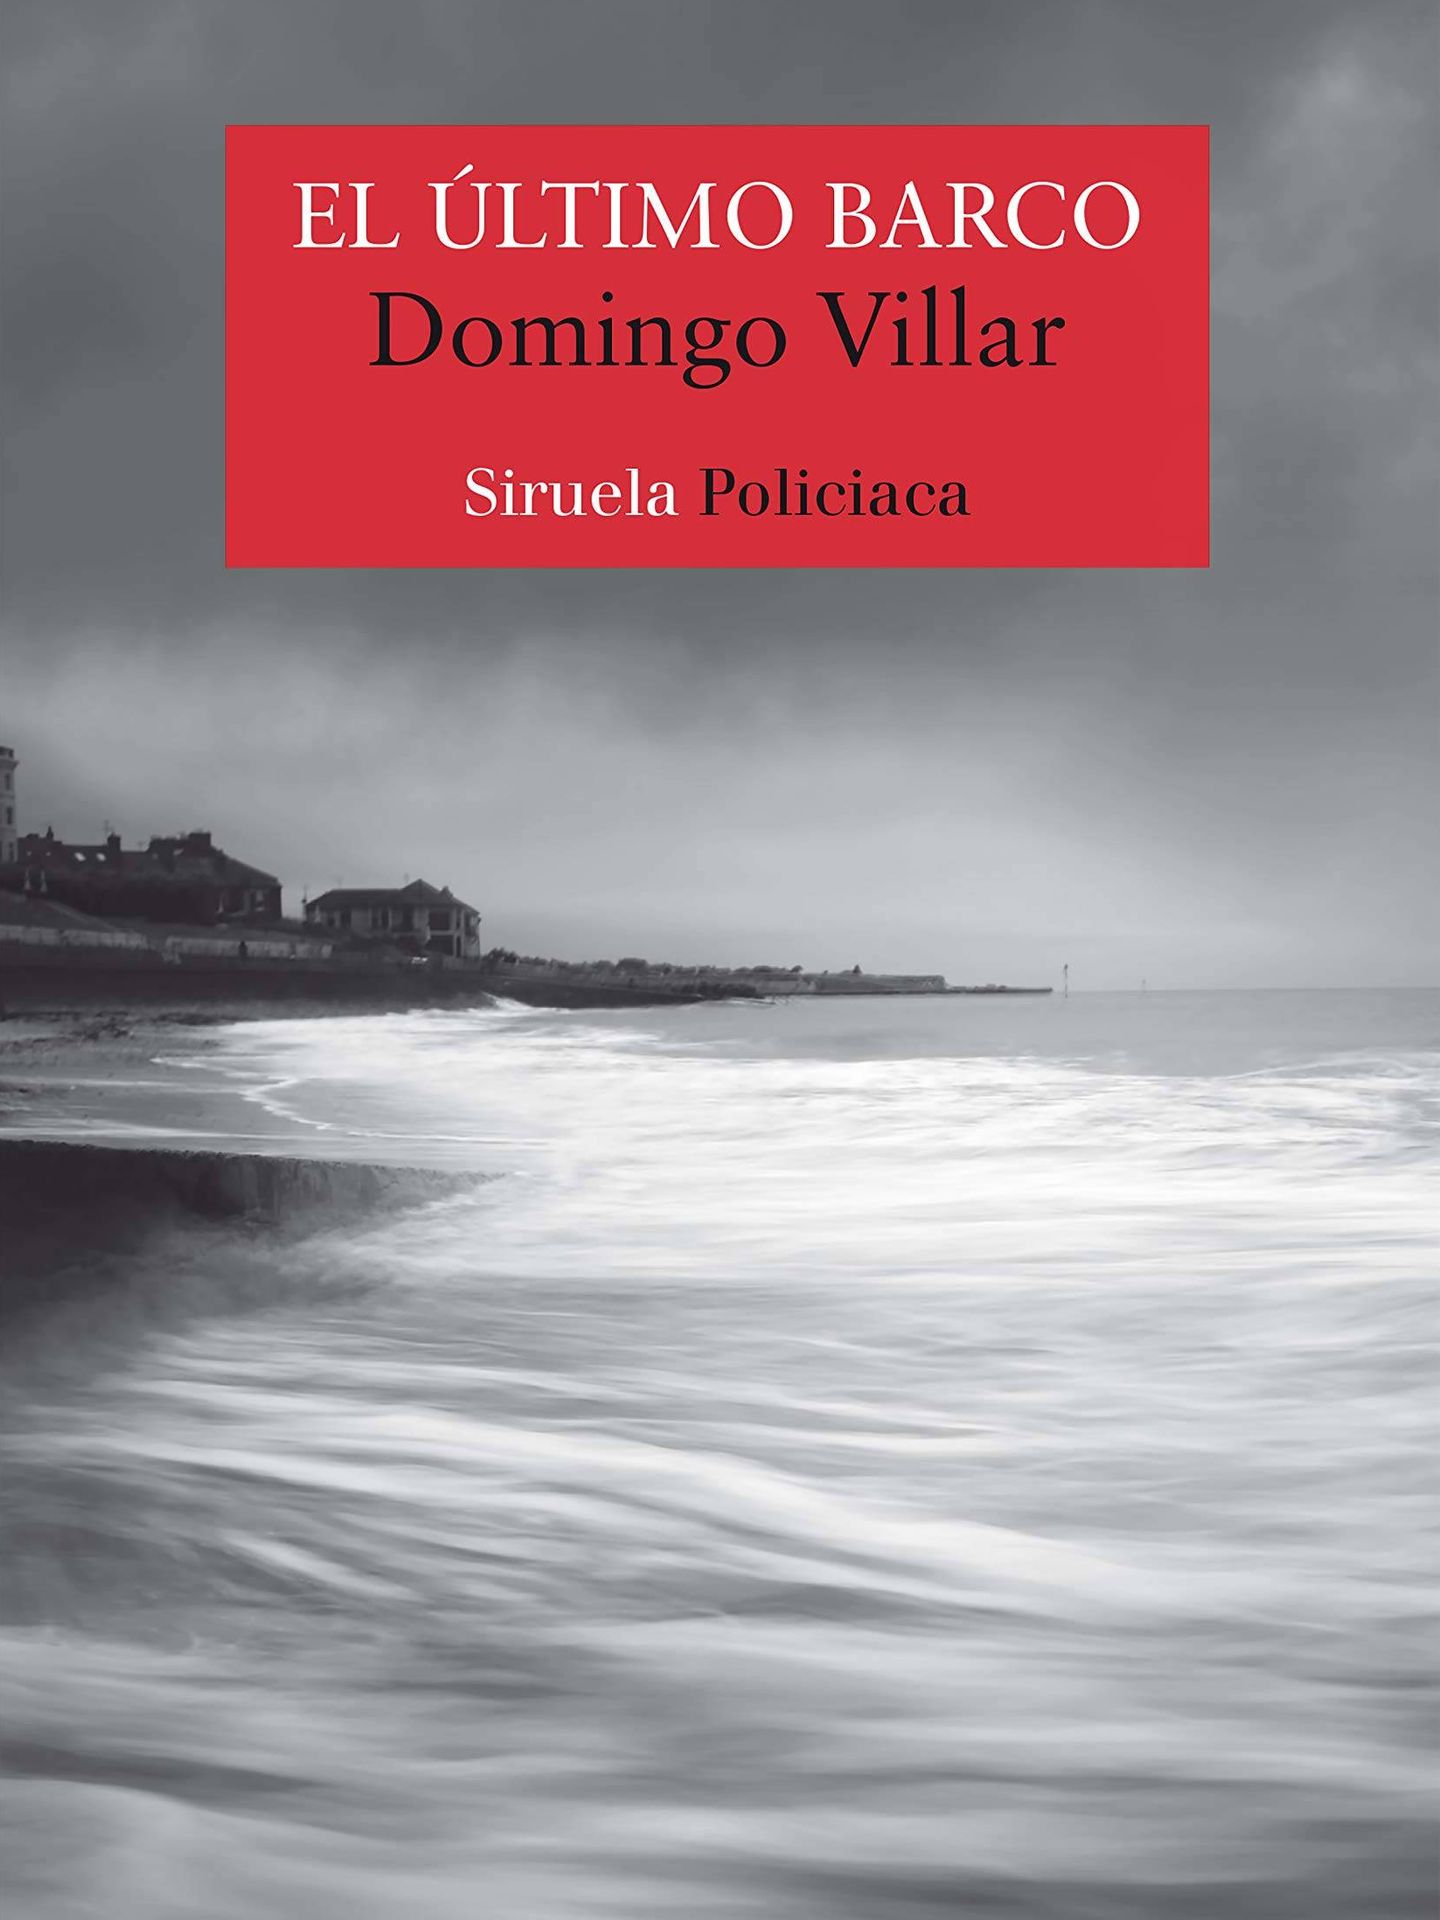 'El último barco', de Domingo Villar. (Siruela)